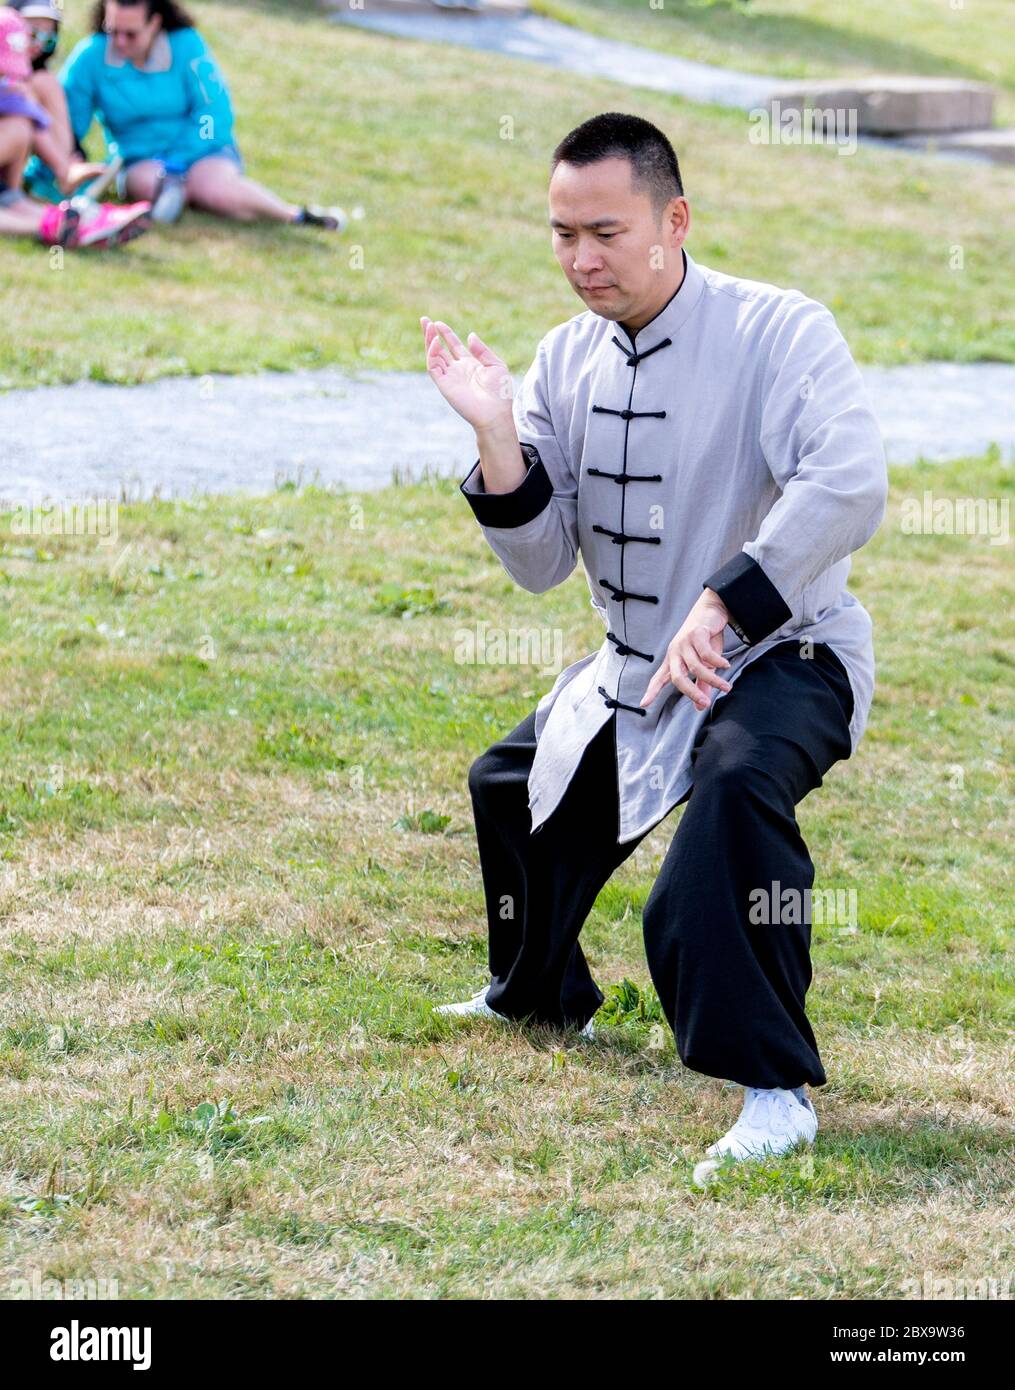 Saint John, Nouveau-Brunswick, Canada - 26 août 2017 : événements au Festival des bateaux-dragons. Un homme asiatique démontre le Tai Chi. Banque D'Images